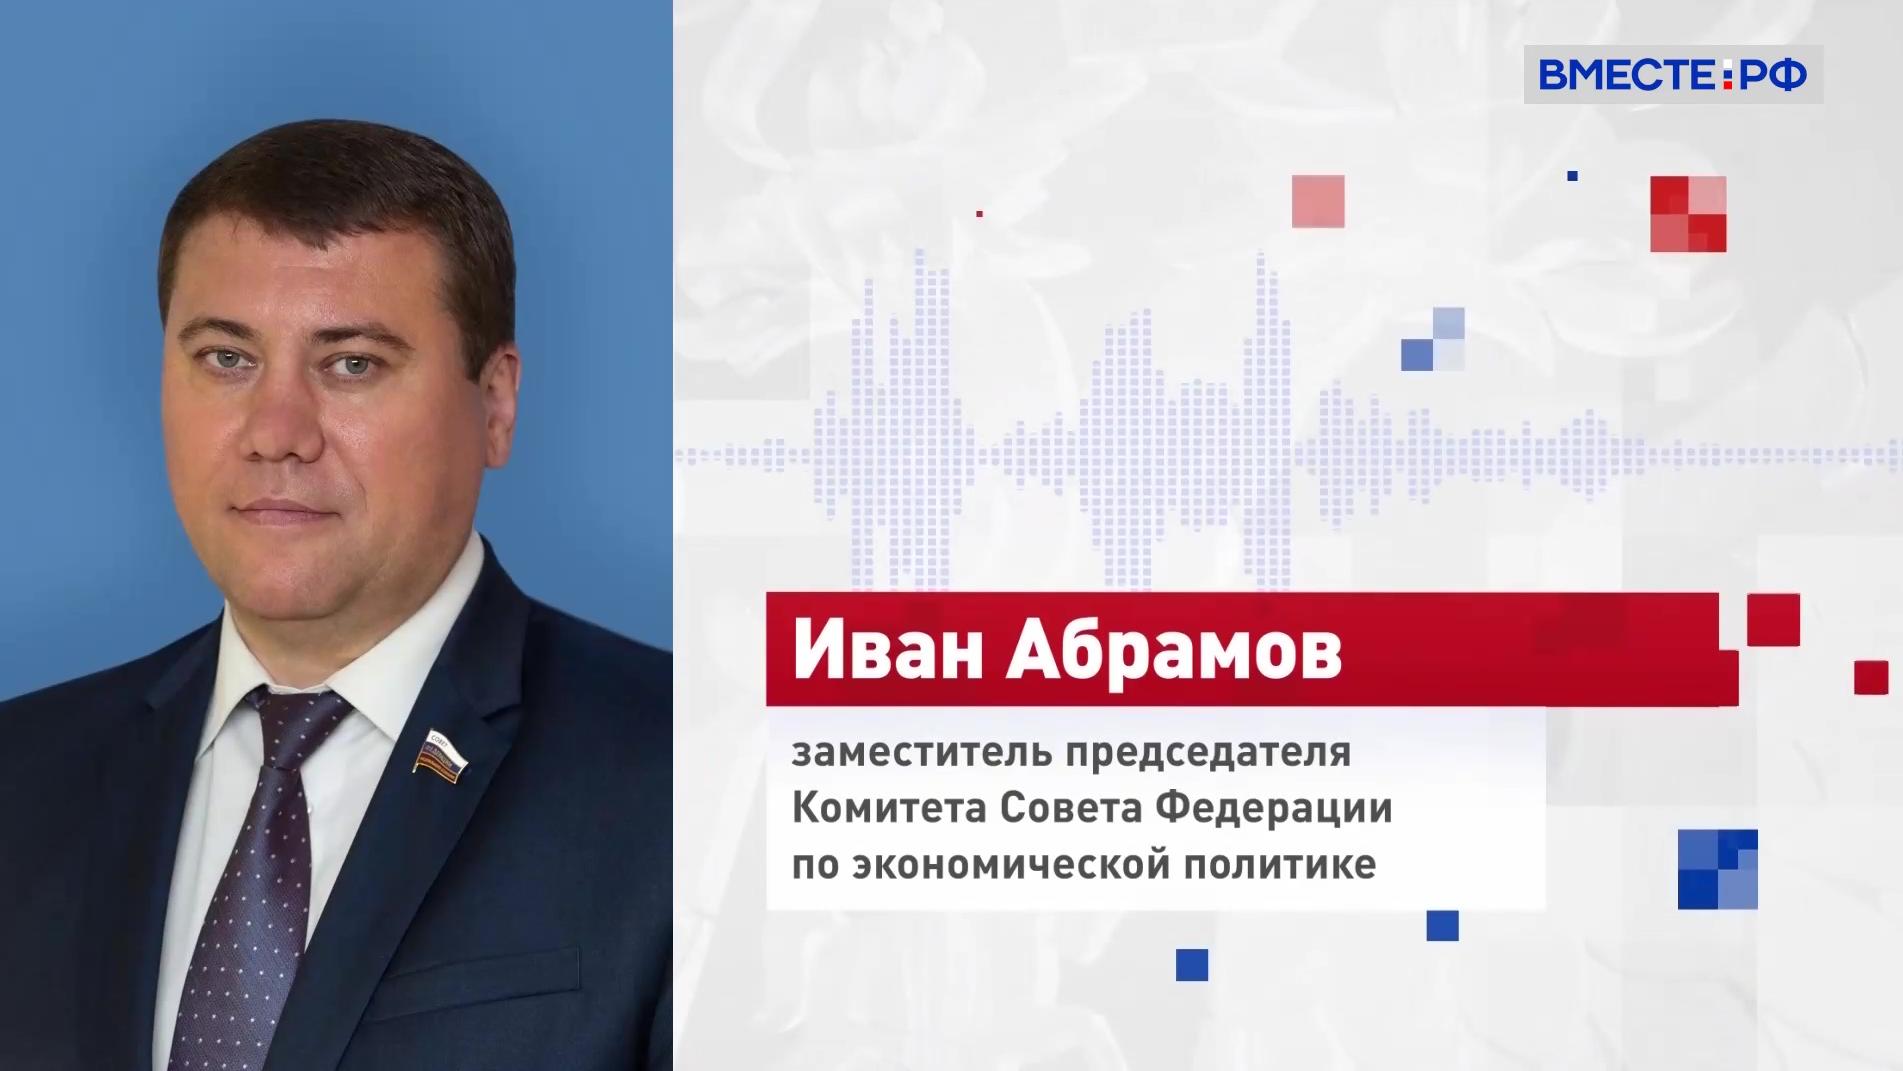 Сенатор Абрамов уверен, что скоро российскую карту «Мир» будут принимать все страны БРИКС